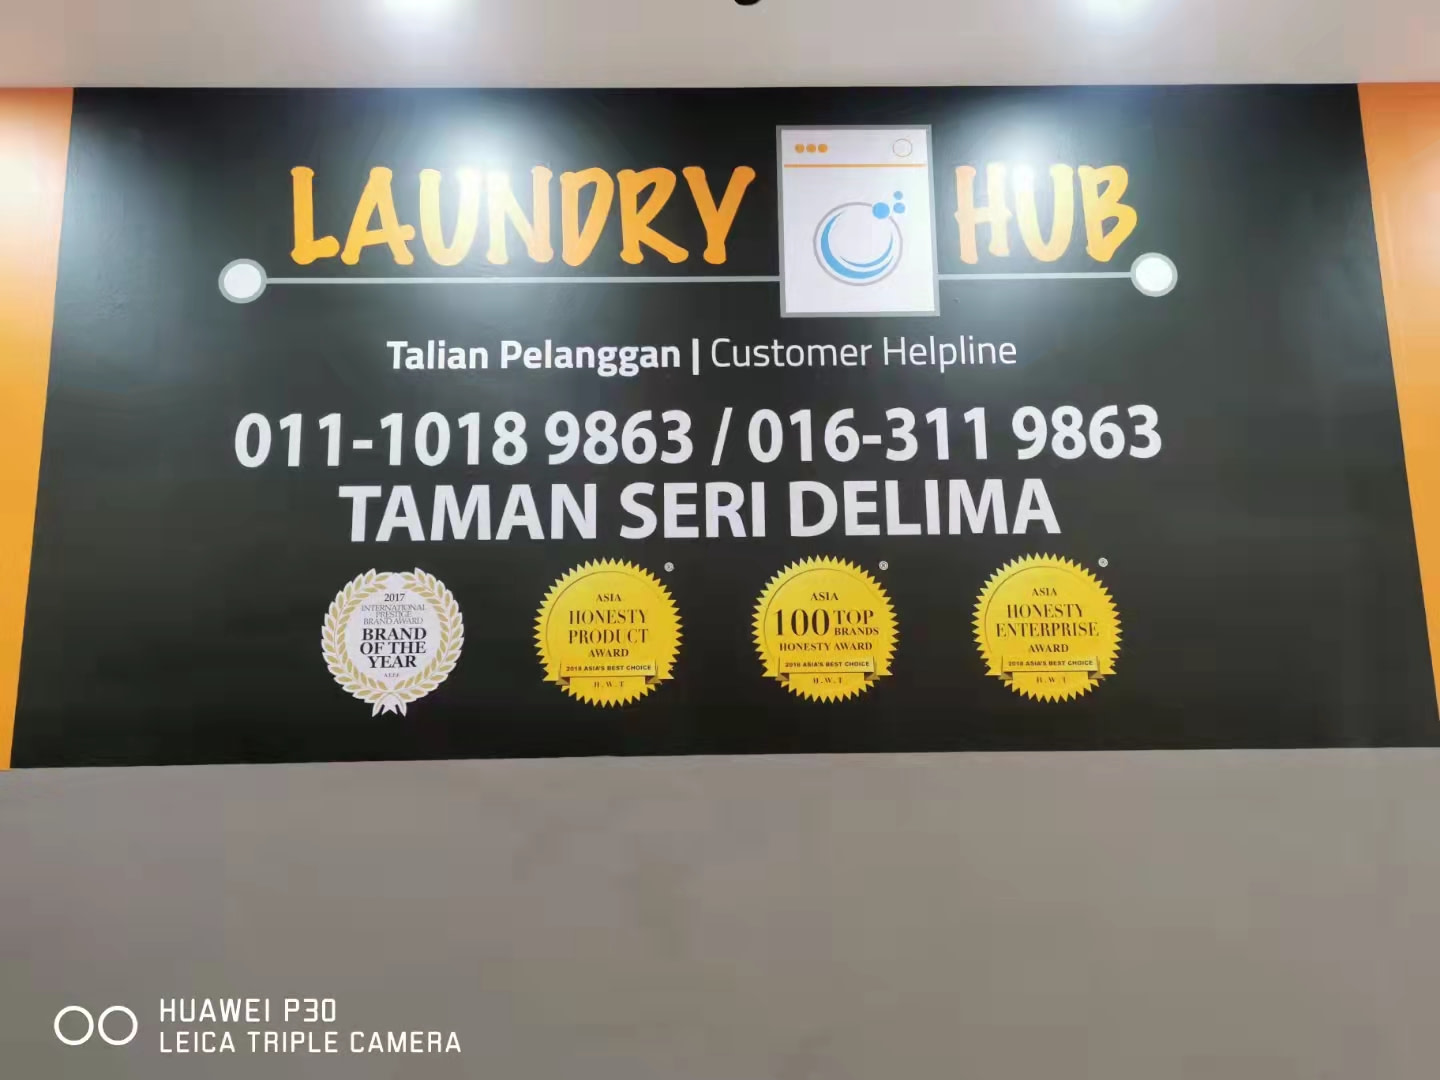 Grand Opening new LaundryHub in Taman Seri Delima Dengkil, Selangor